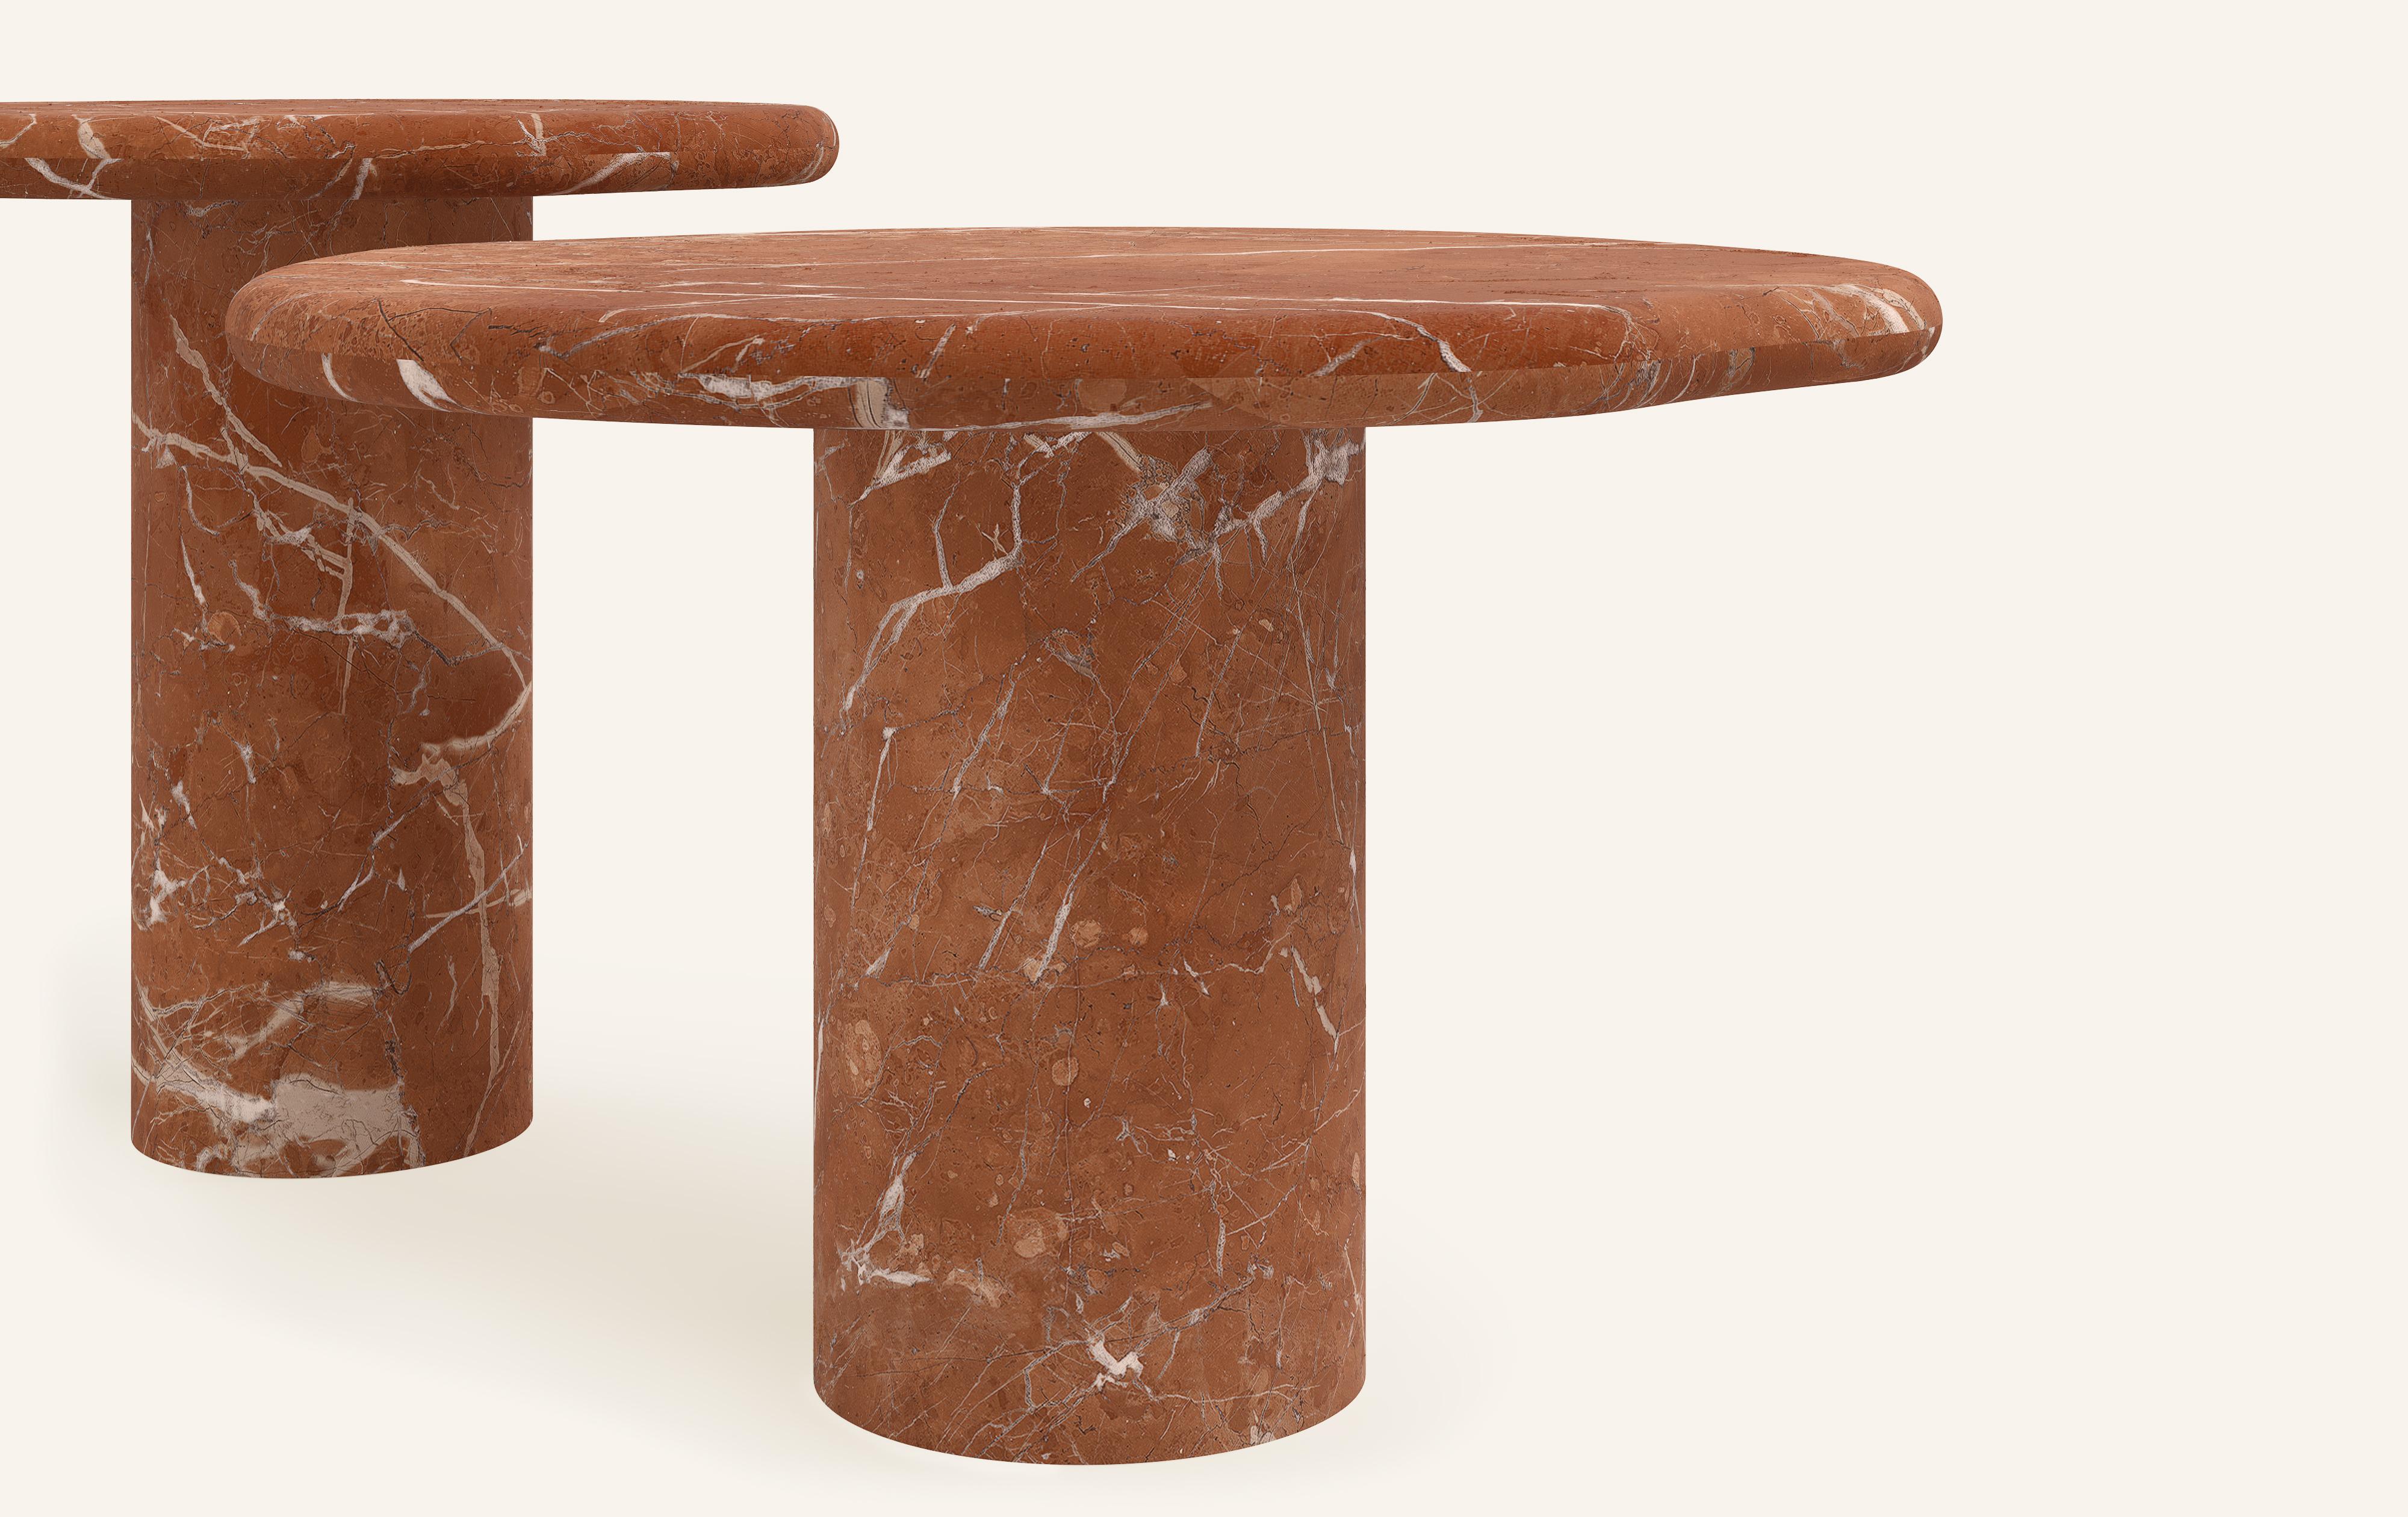 Organic Modern FORM(LA) Lago Round Side Table 24”L x 24”W x 16”H Rojo Alicante Marble For Sale